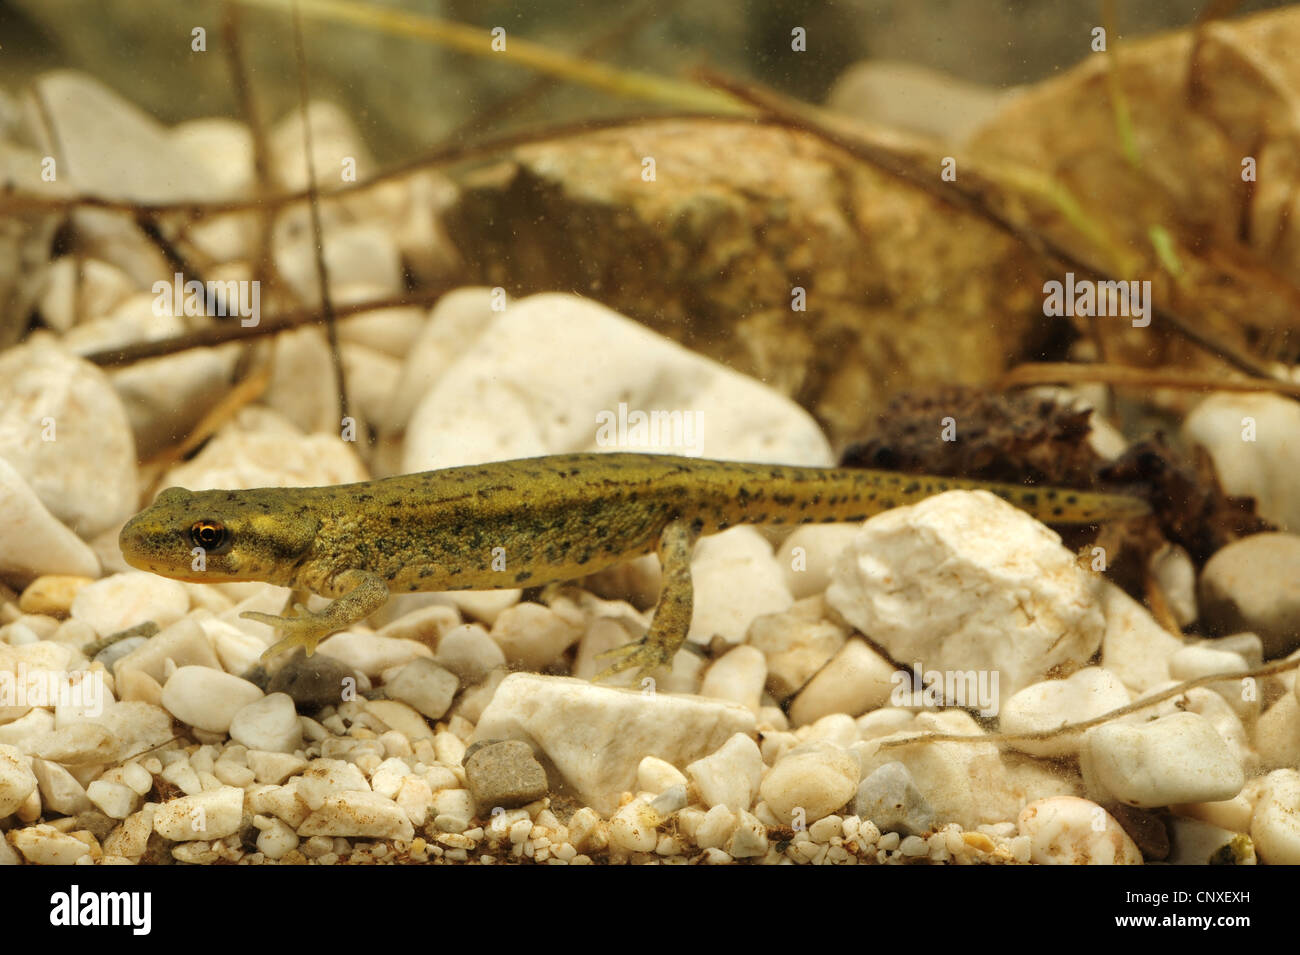 Italian newt (Triturus italicus), female in water, Italy, Calabria Stock Photo